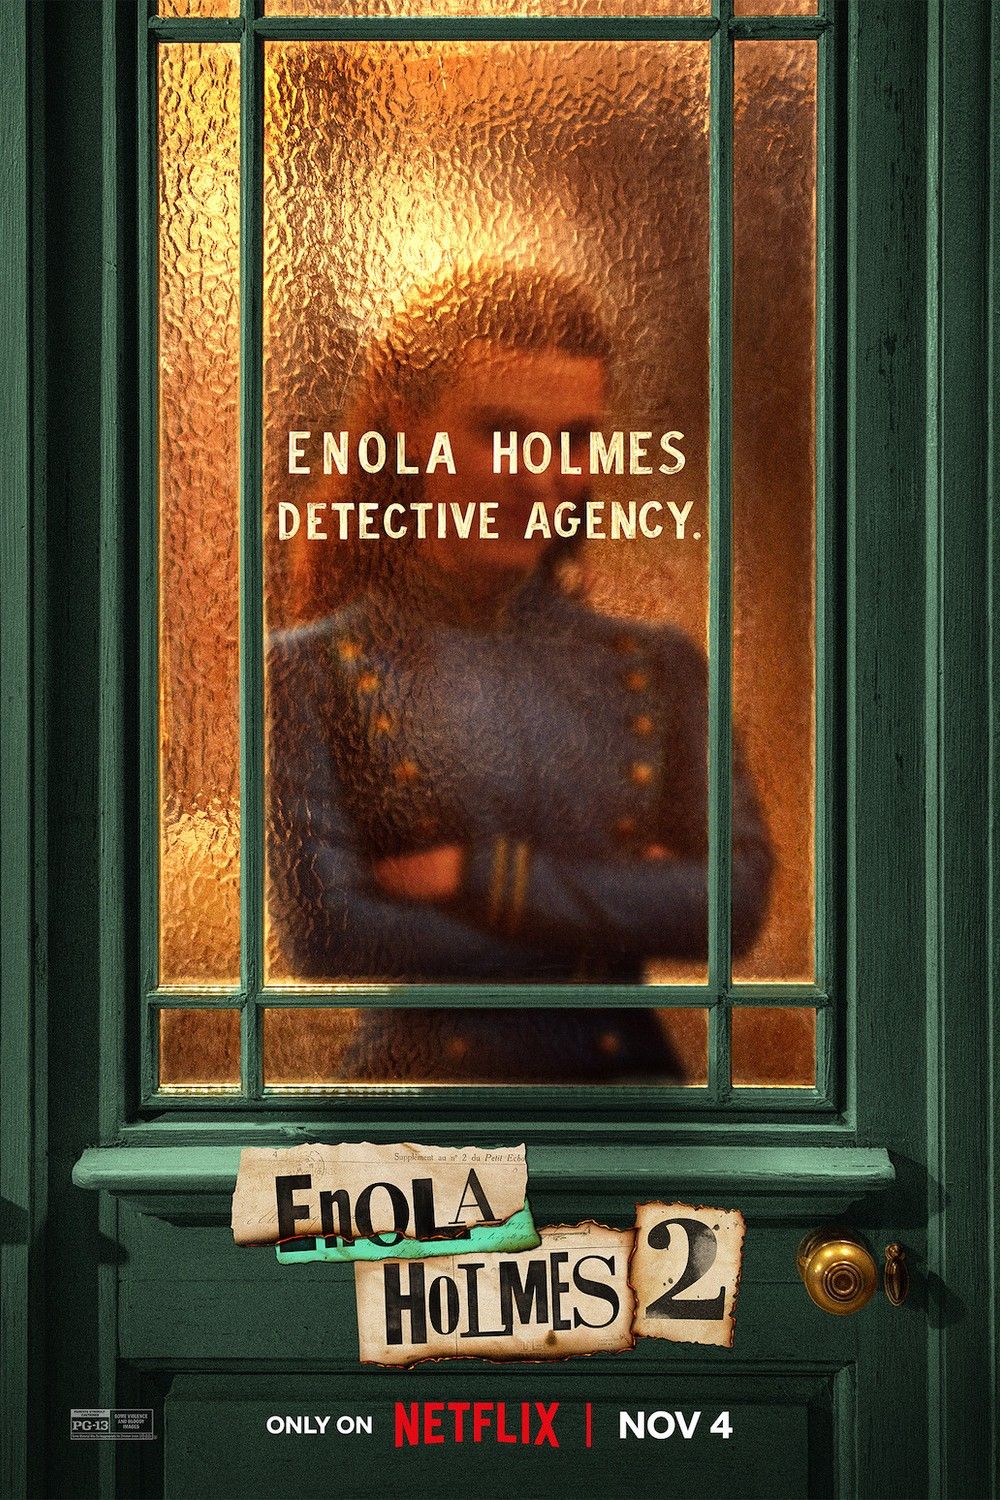 Enola Holmes 2 Continues A Brilliant Post-Harry Potter Actor Trend